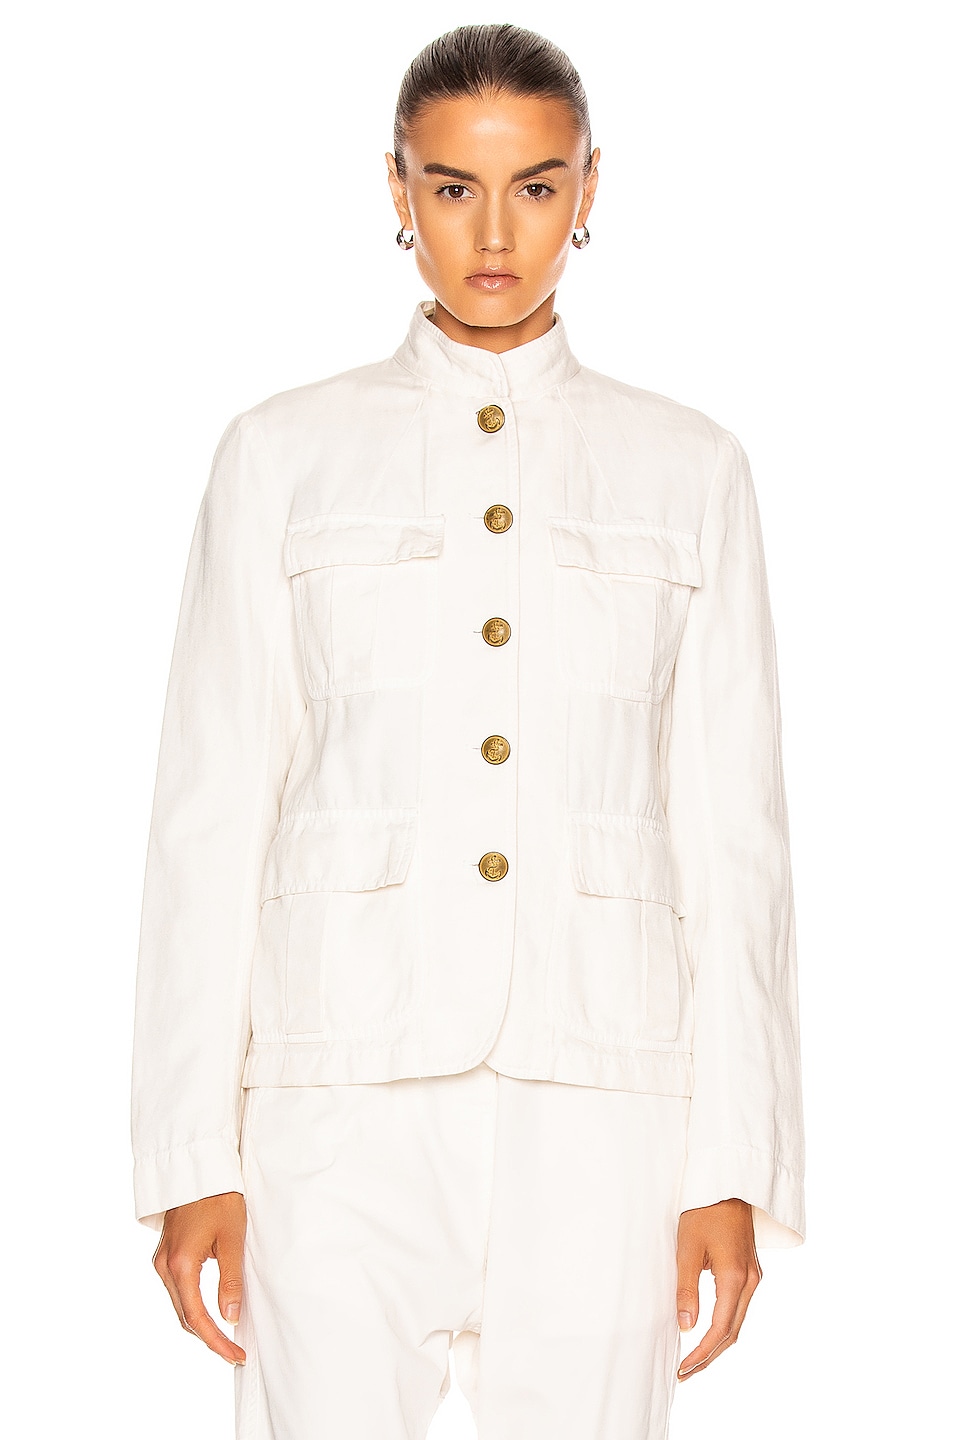 NILI LOTAN Cambre Jacket in White Sand | FWRD